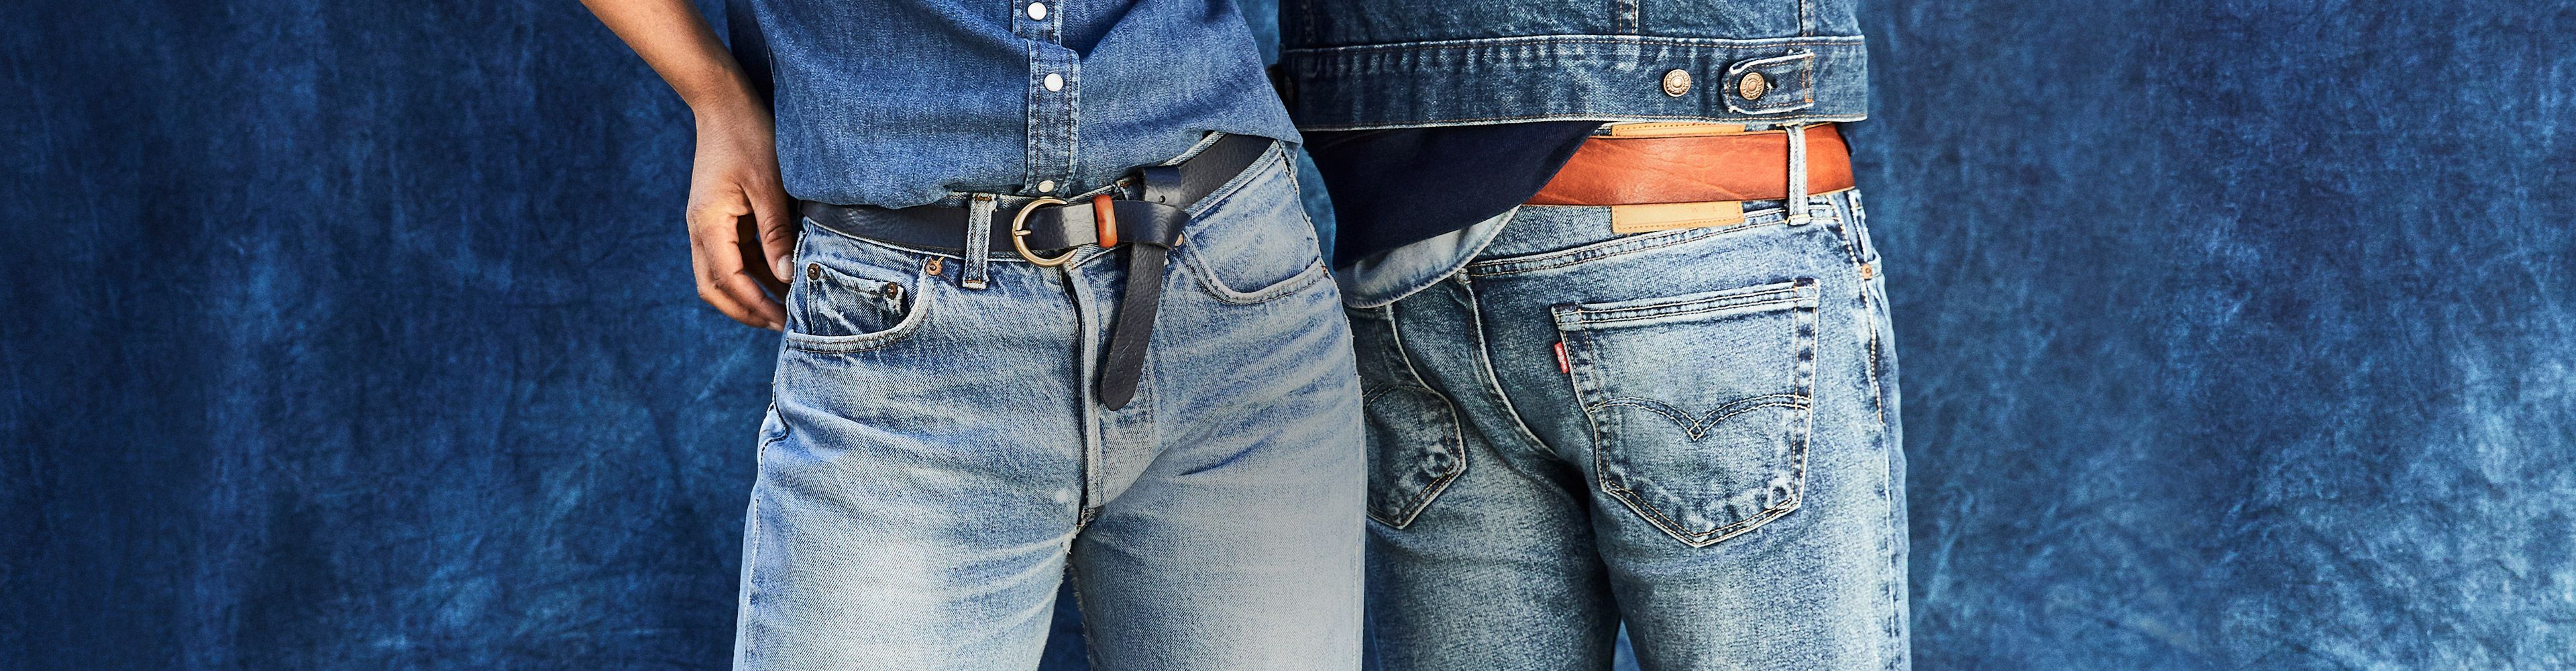 levis fire resistant jeans